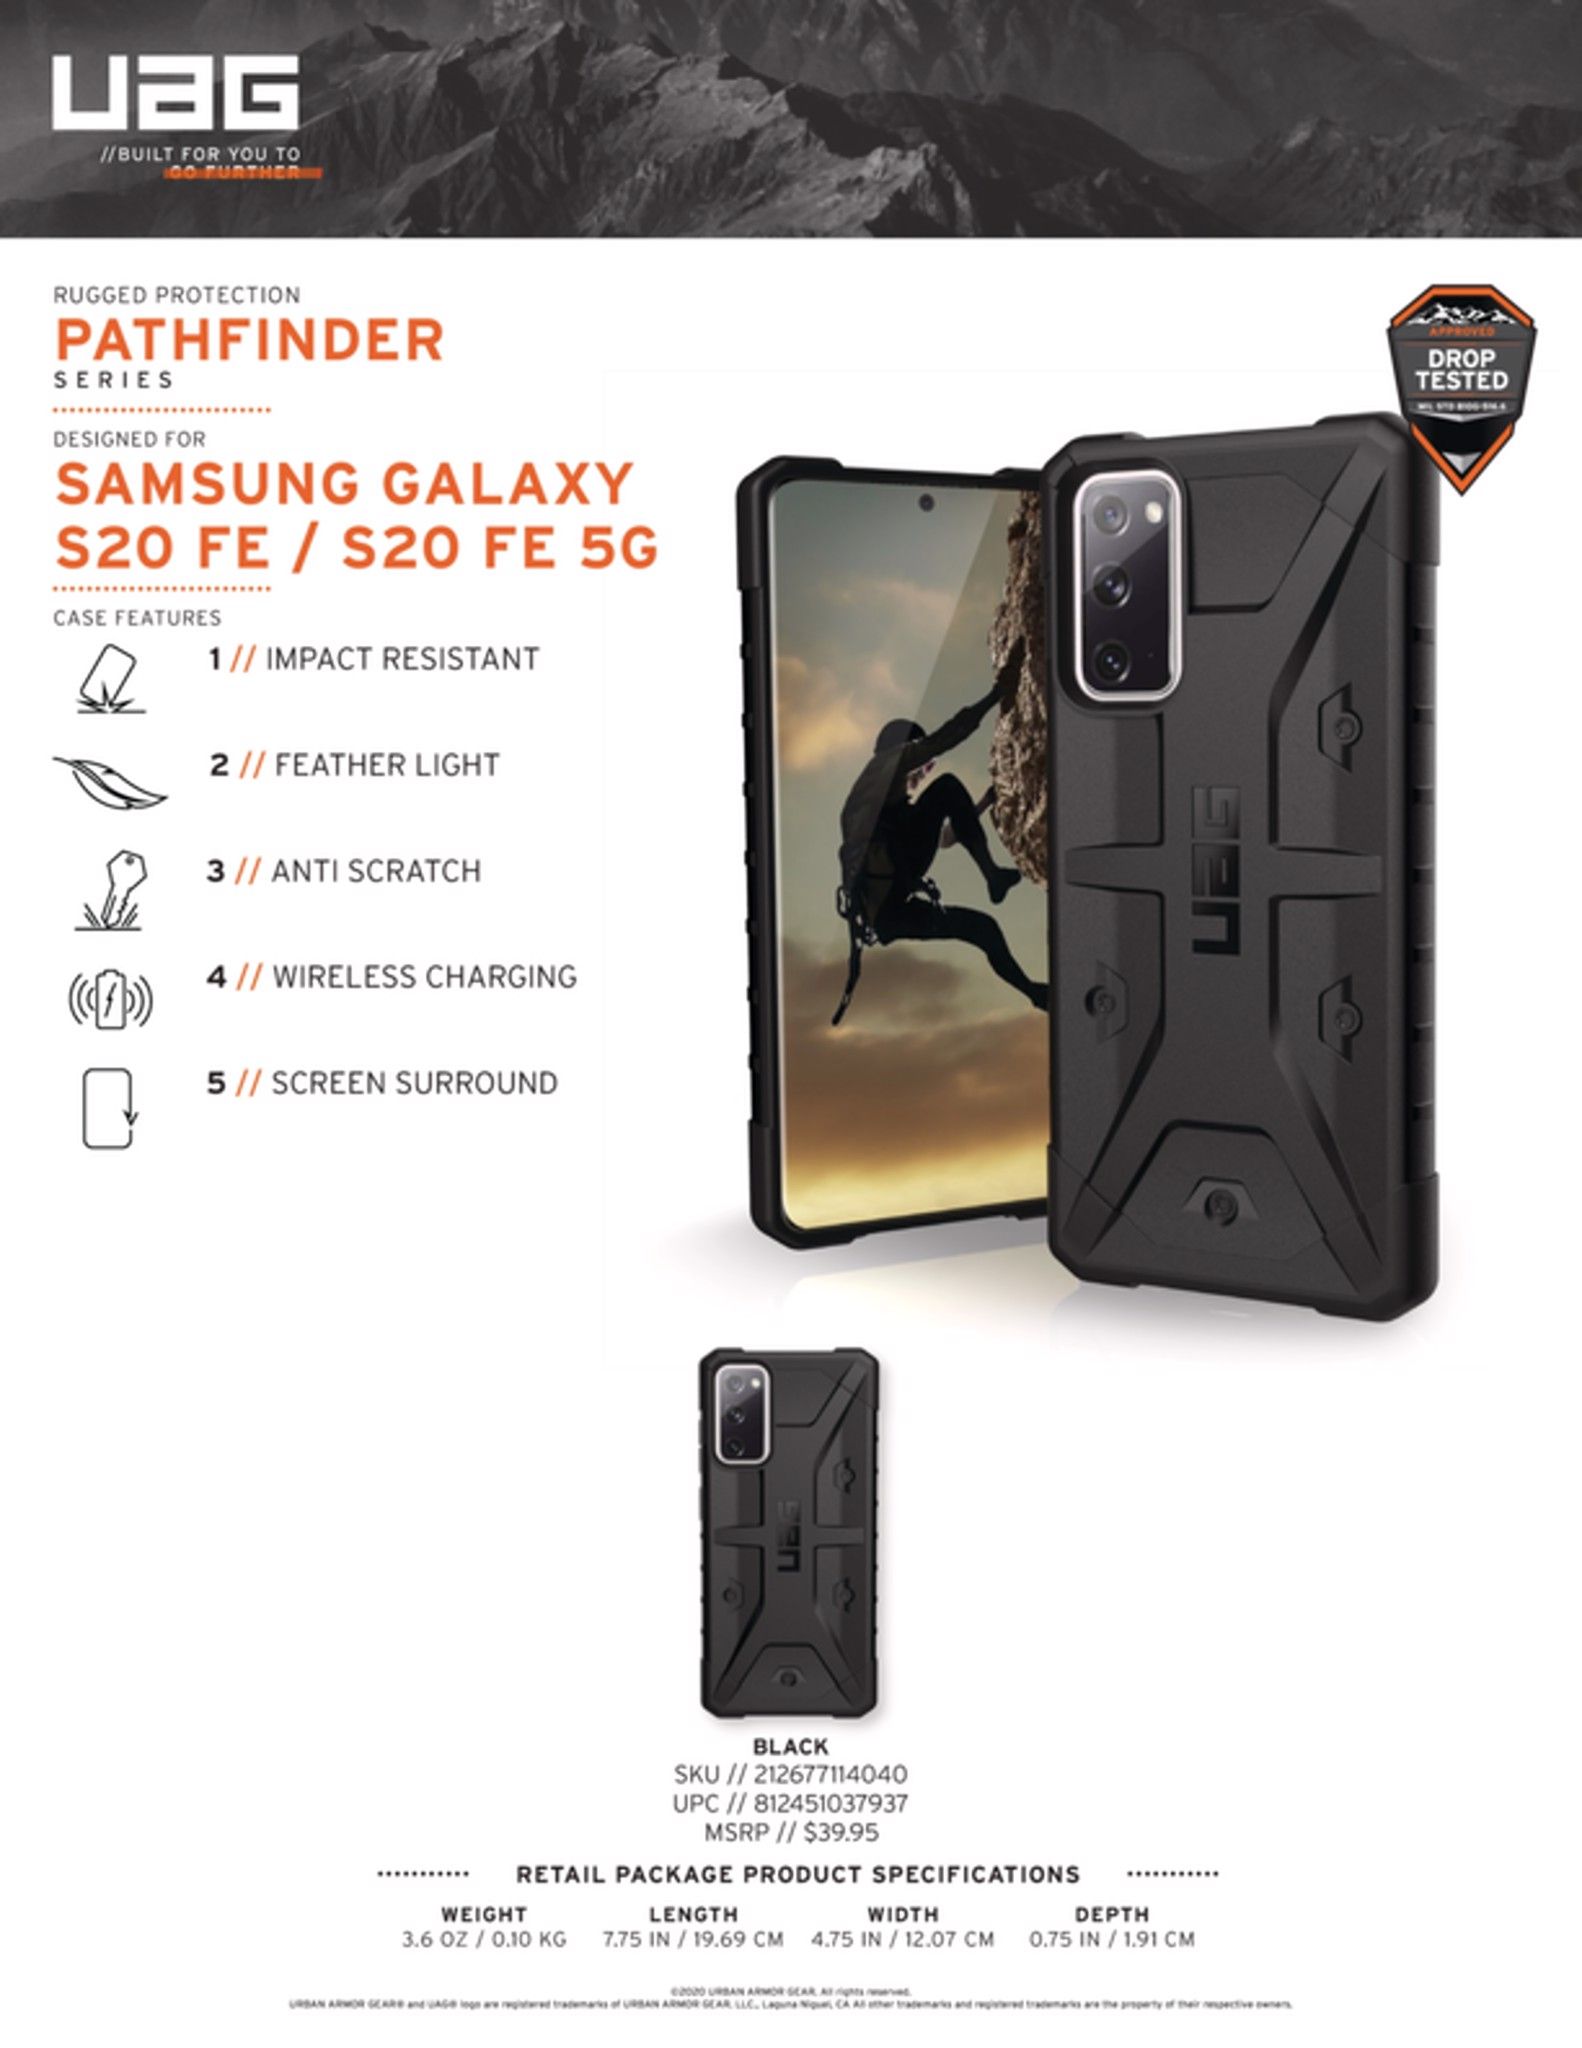  Ốp lưng Pathfinder cho Samsung Galaxy S20 FE/FE 5G [6.5-inch] 